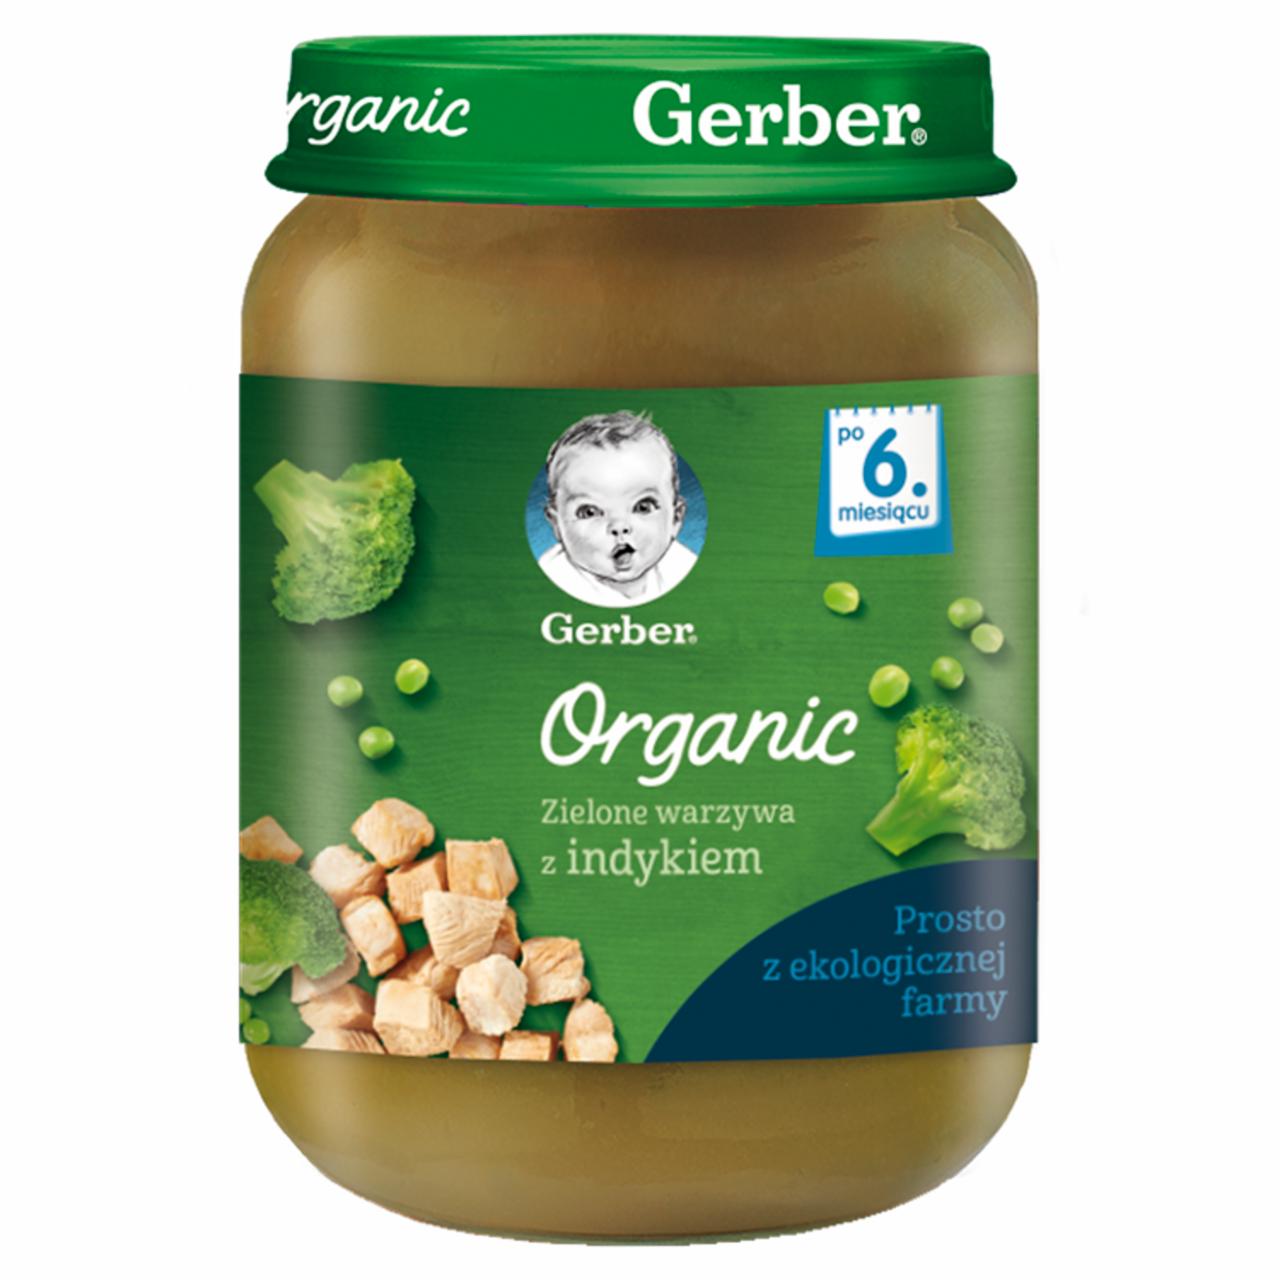 Zdjęcia - Gerber Organic Zielone warzywa z indykiem dla niemowląt po 6. miesiącu 190 g